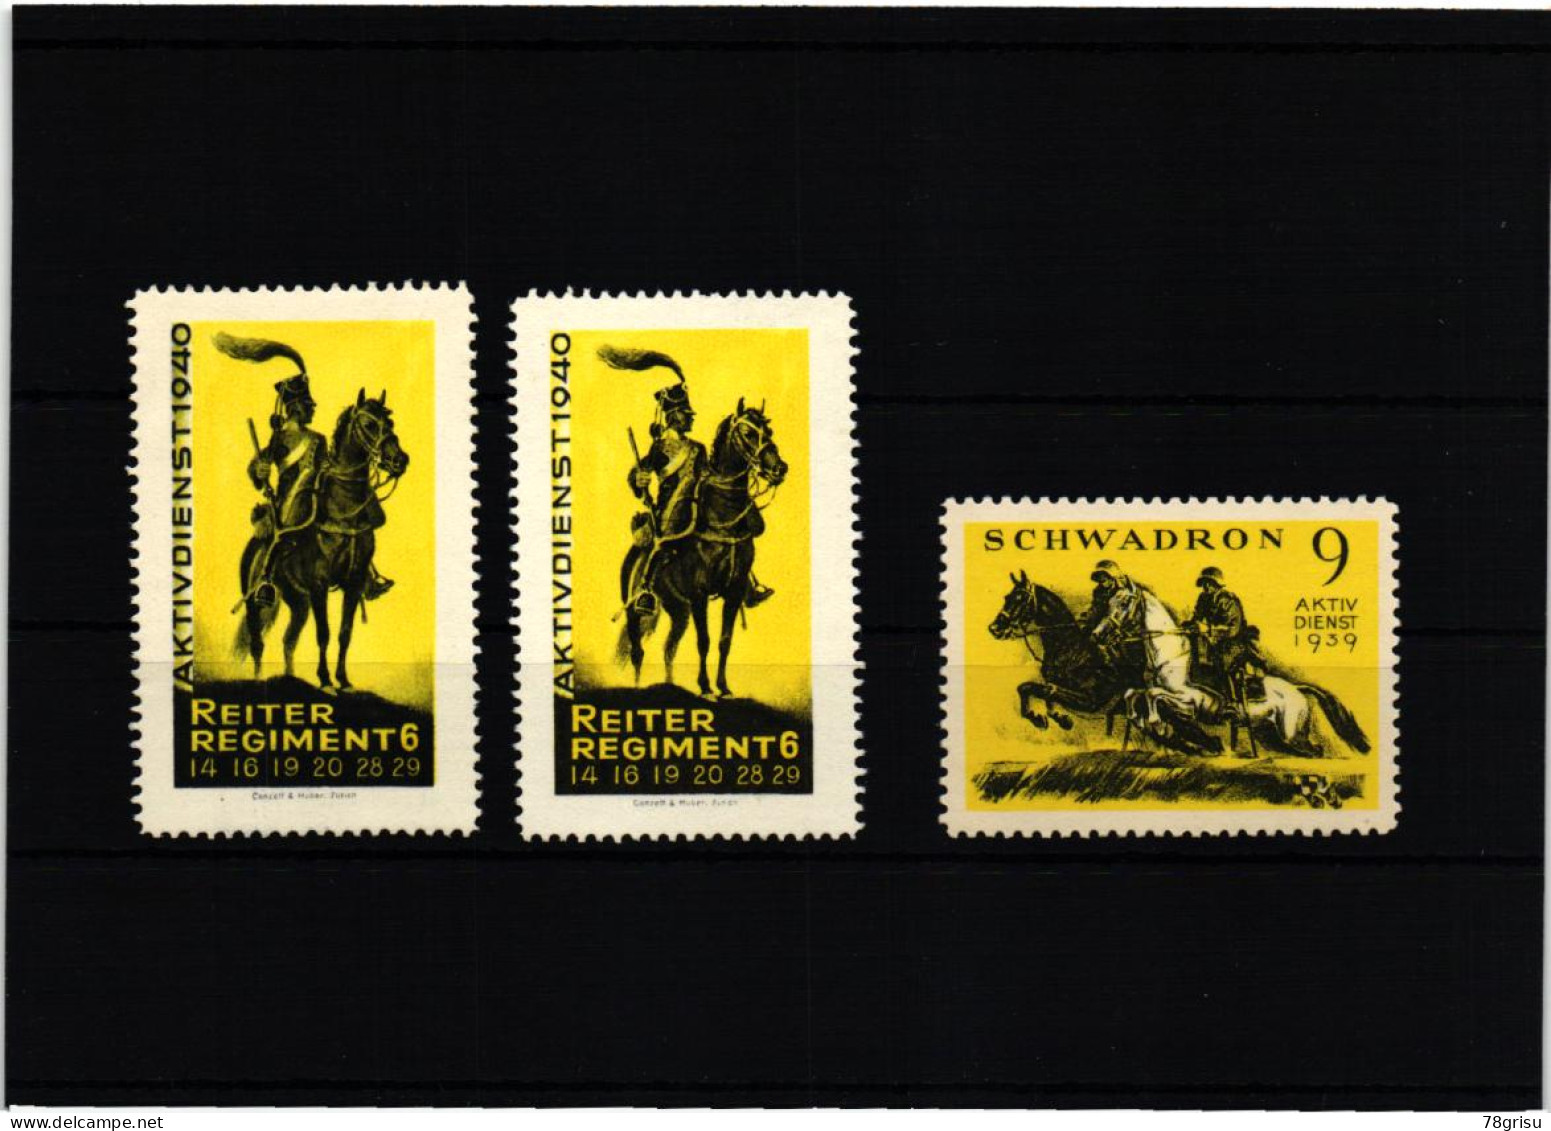 Schweiz Soldatenmarken, Reiter Regiment Schwadron , Aktivdienst 1929 1940 - Vignetten